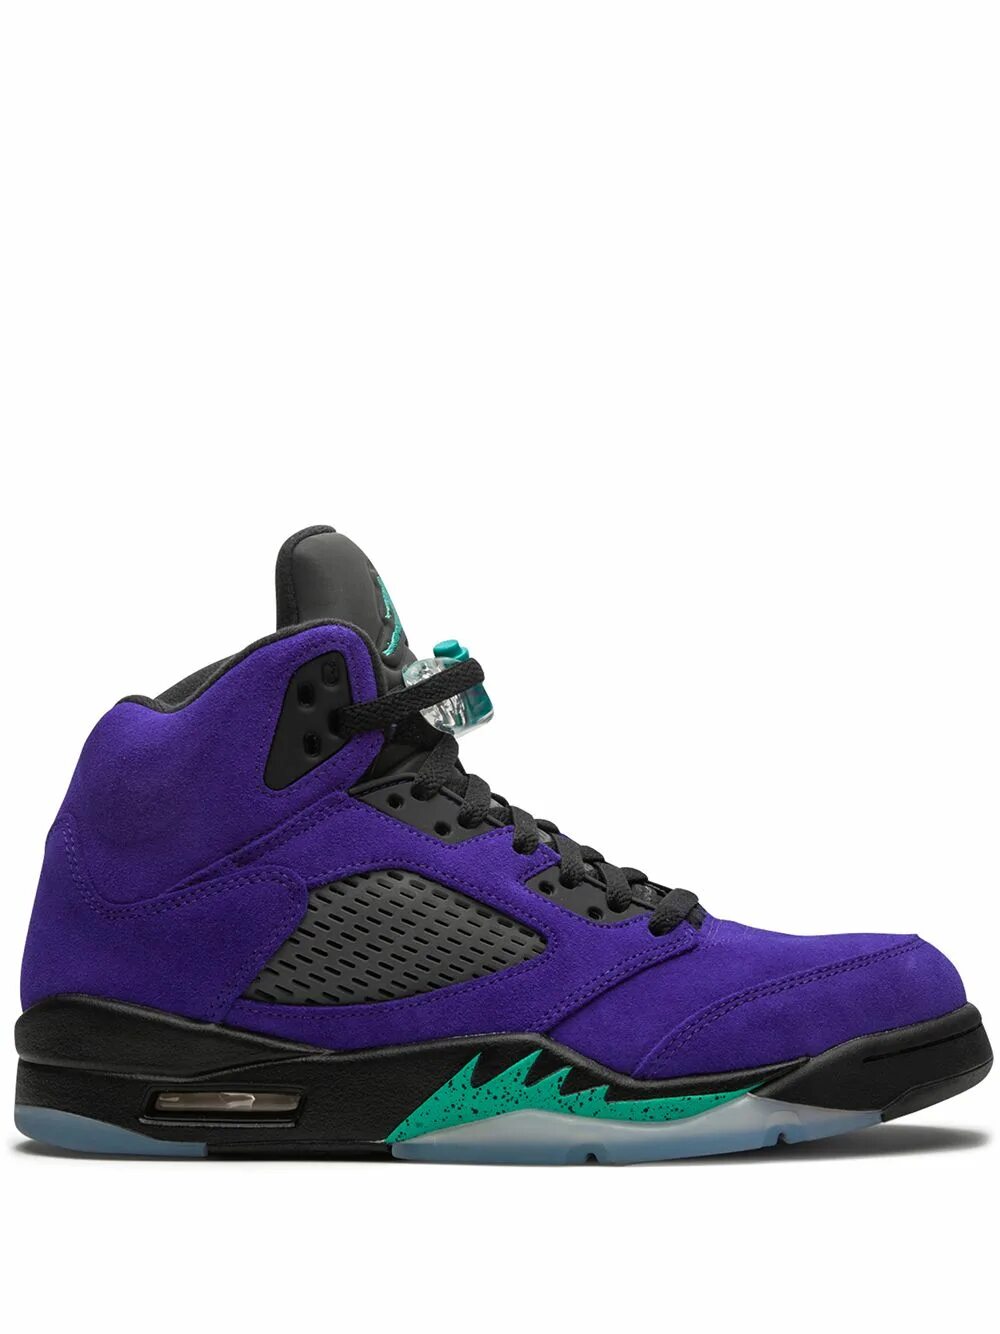 Nike Air Jordan 5 Retro grape. Nike Air Jordan 5. Nike Air Jordan 5 Retro Alternate grape. Найк Jordan 5 Retro Alternate grape фиолетовые.